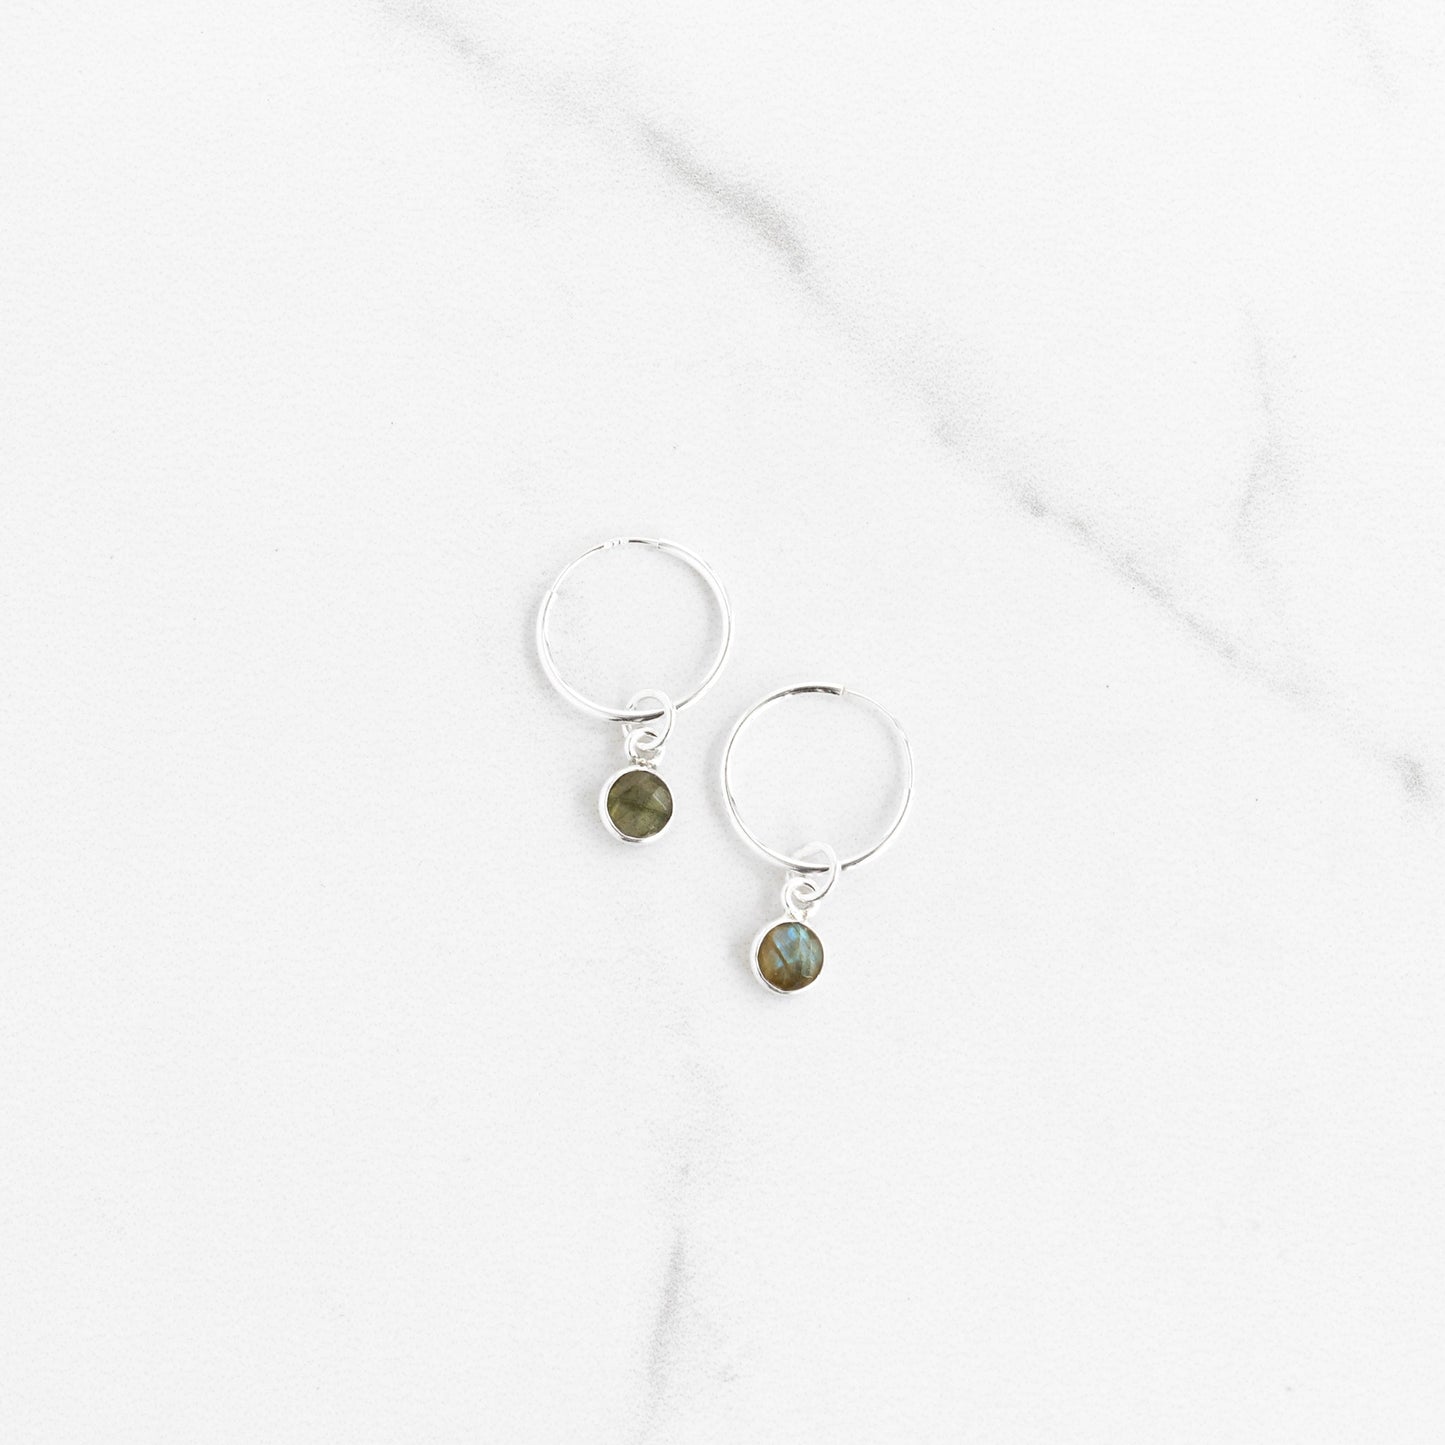 Load image into Gallery viewer, Labradorite Sterling Silver Hoop Earrings - Gemlet
